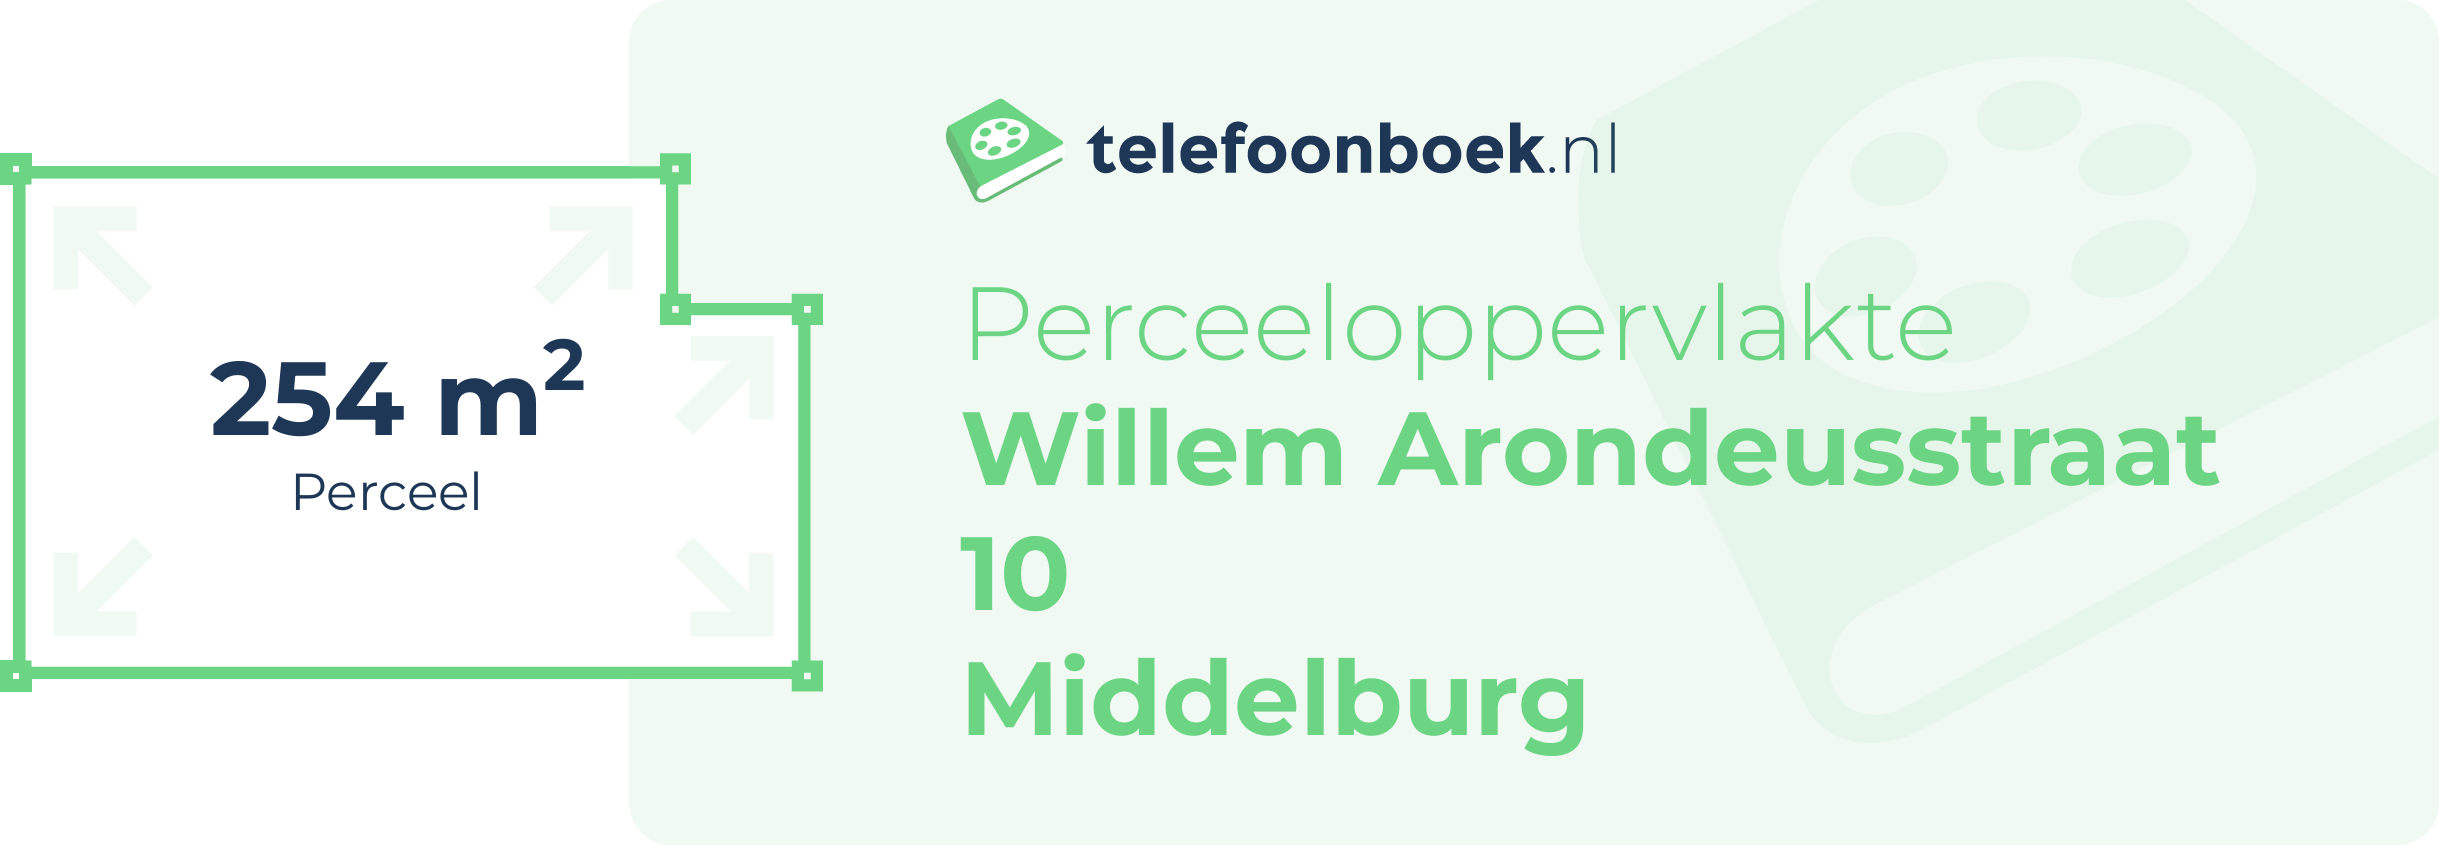 Perceeloppervlakte Willem Arondeusstraat 10 Middelburg